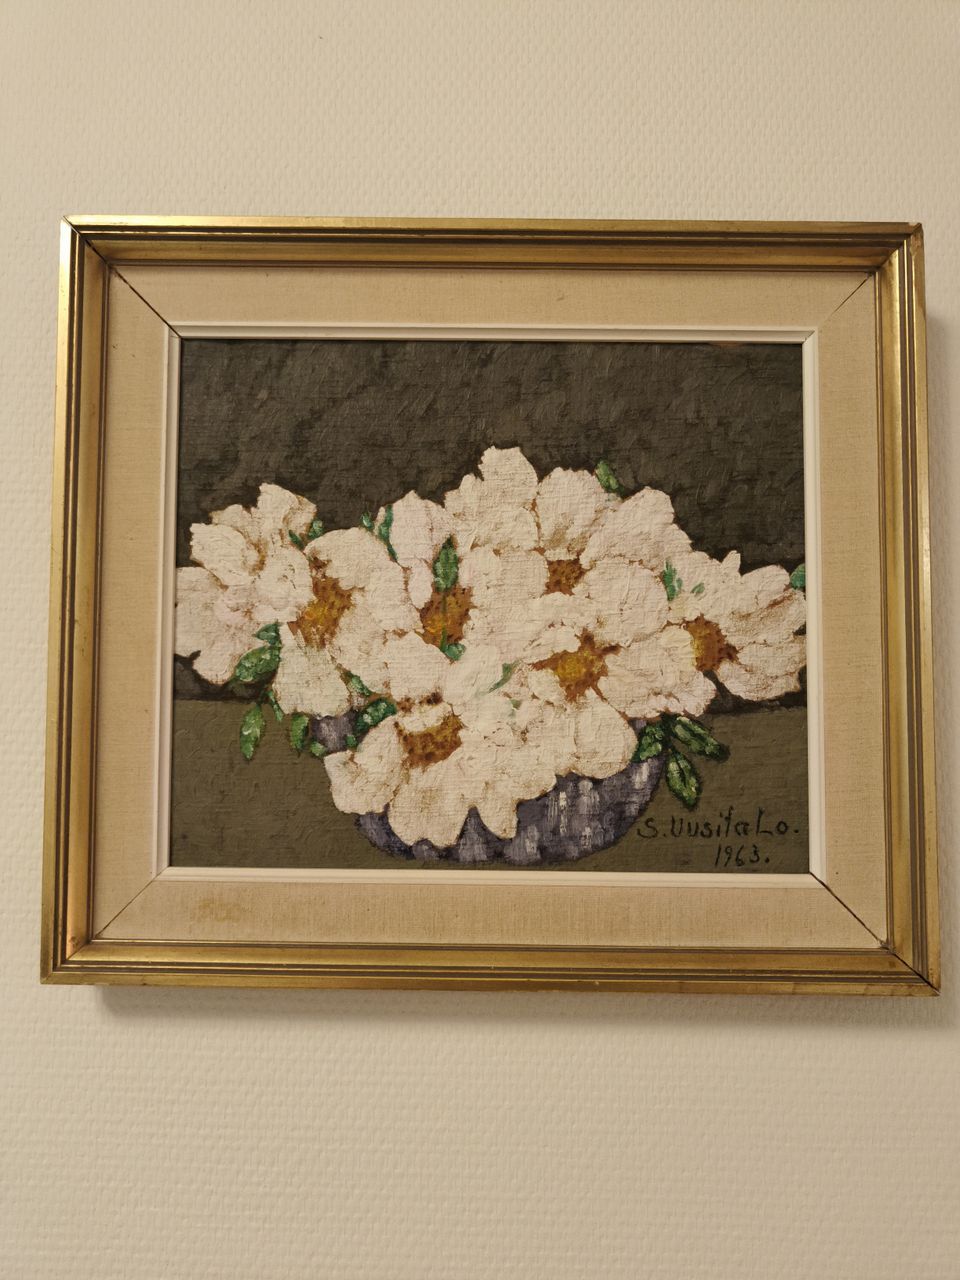 S. Uusitalo maalaus 1963 kukkia